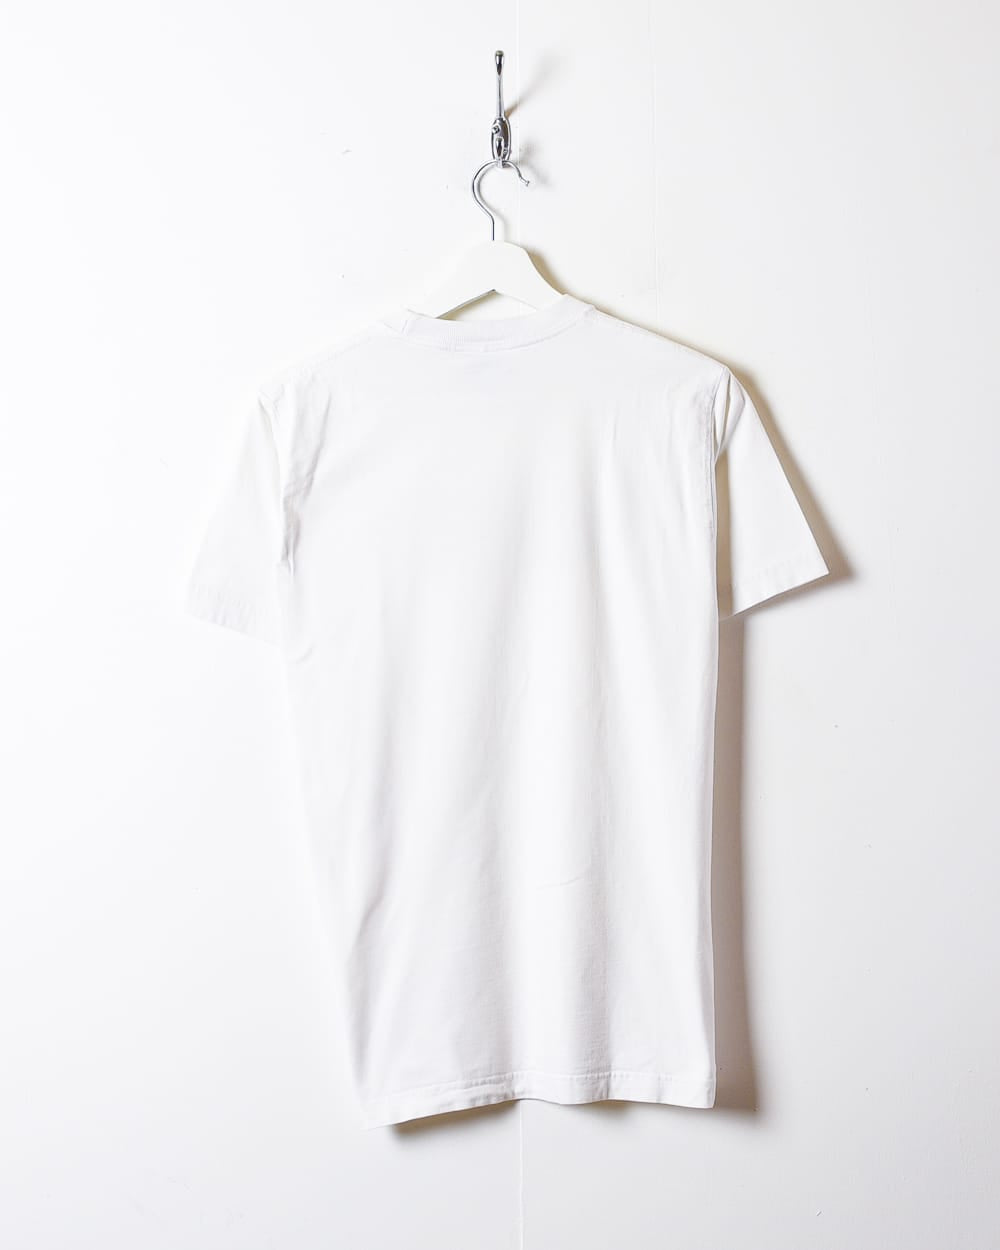 White Fila T-Shirt - Small